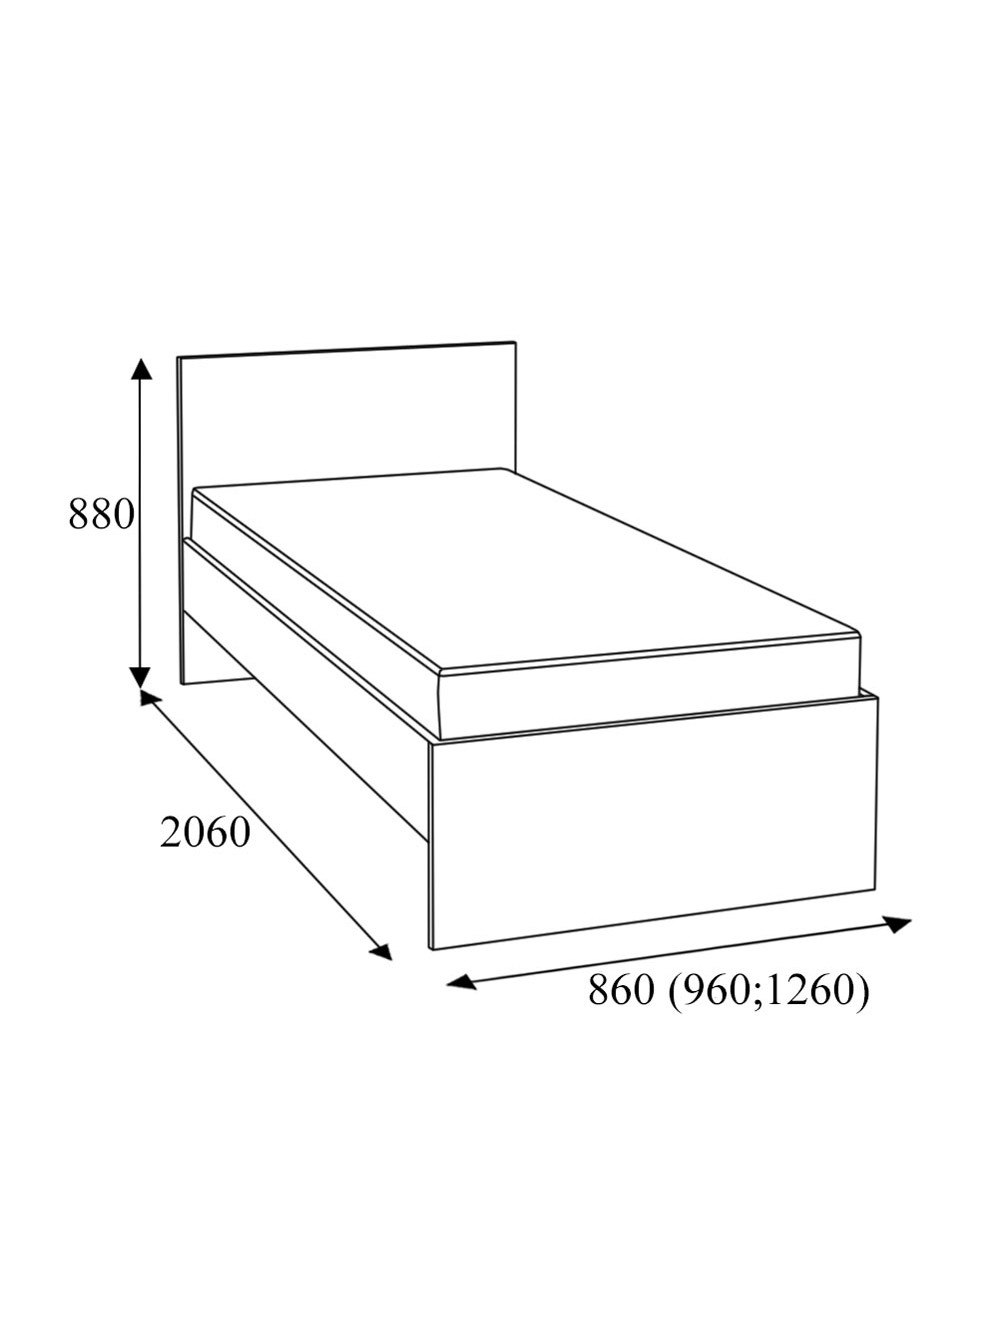 Кровать полуторка размер. Стандарт размер кровати односпалка. Размер кровати двуспальной стандарт 140 2000. Габариты односпальной кровати стандарт. Габариты кровати полуторки стандарт.